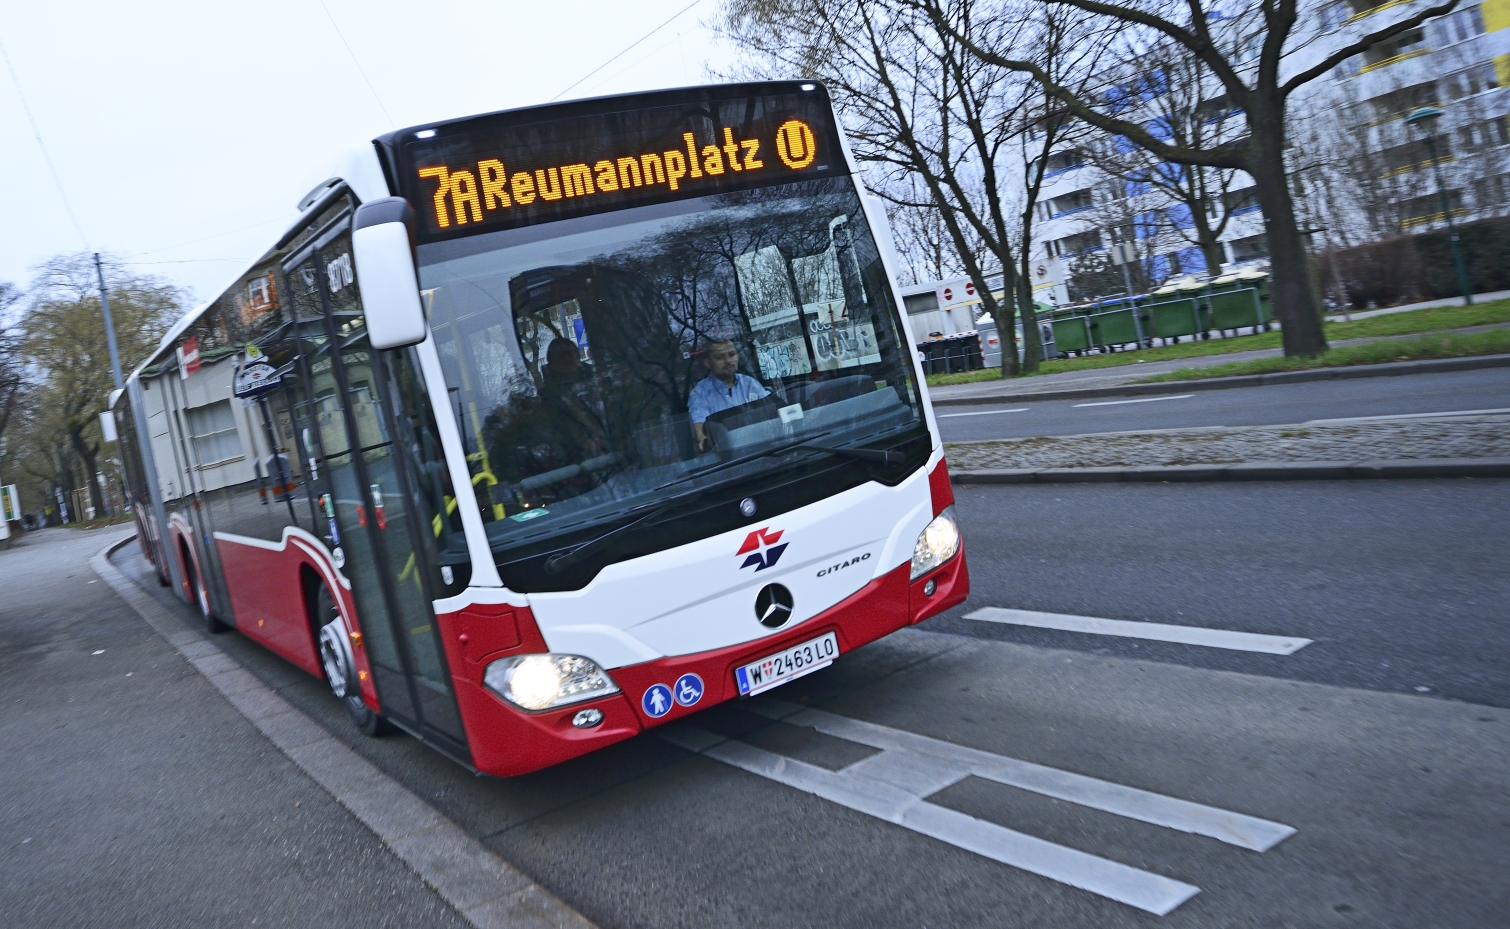 Seit 7. Jänner 2014 sind die neuen umweltfreundlichen CITARO Gelenkbusse des Herstellers Mercedes-Benz im Einsatz, im Bild auf der Linie 7A.